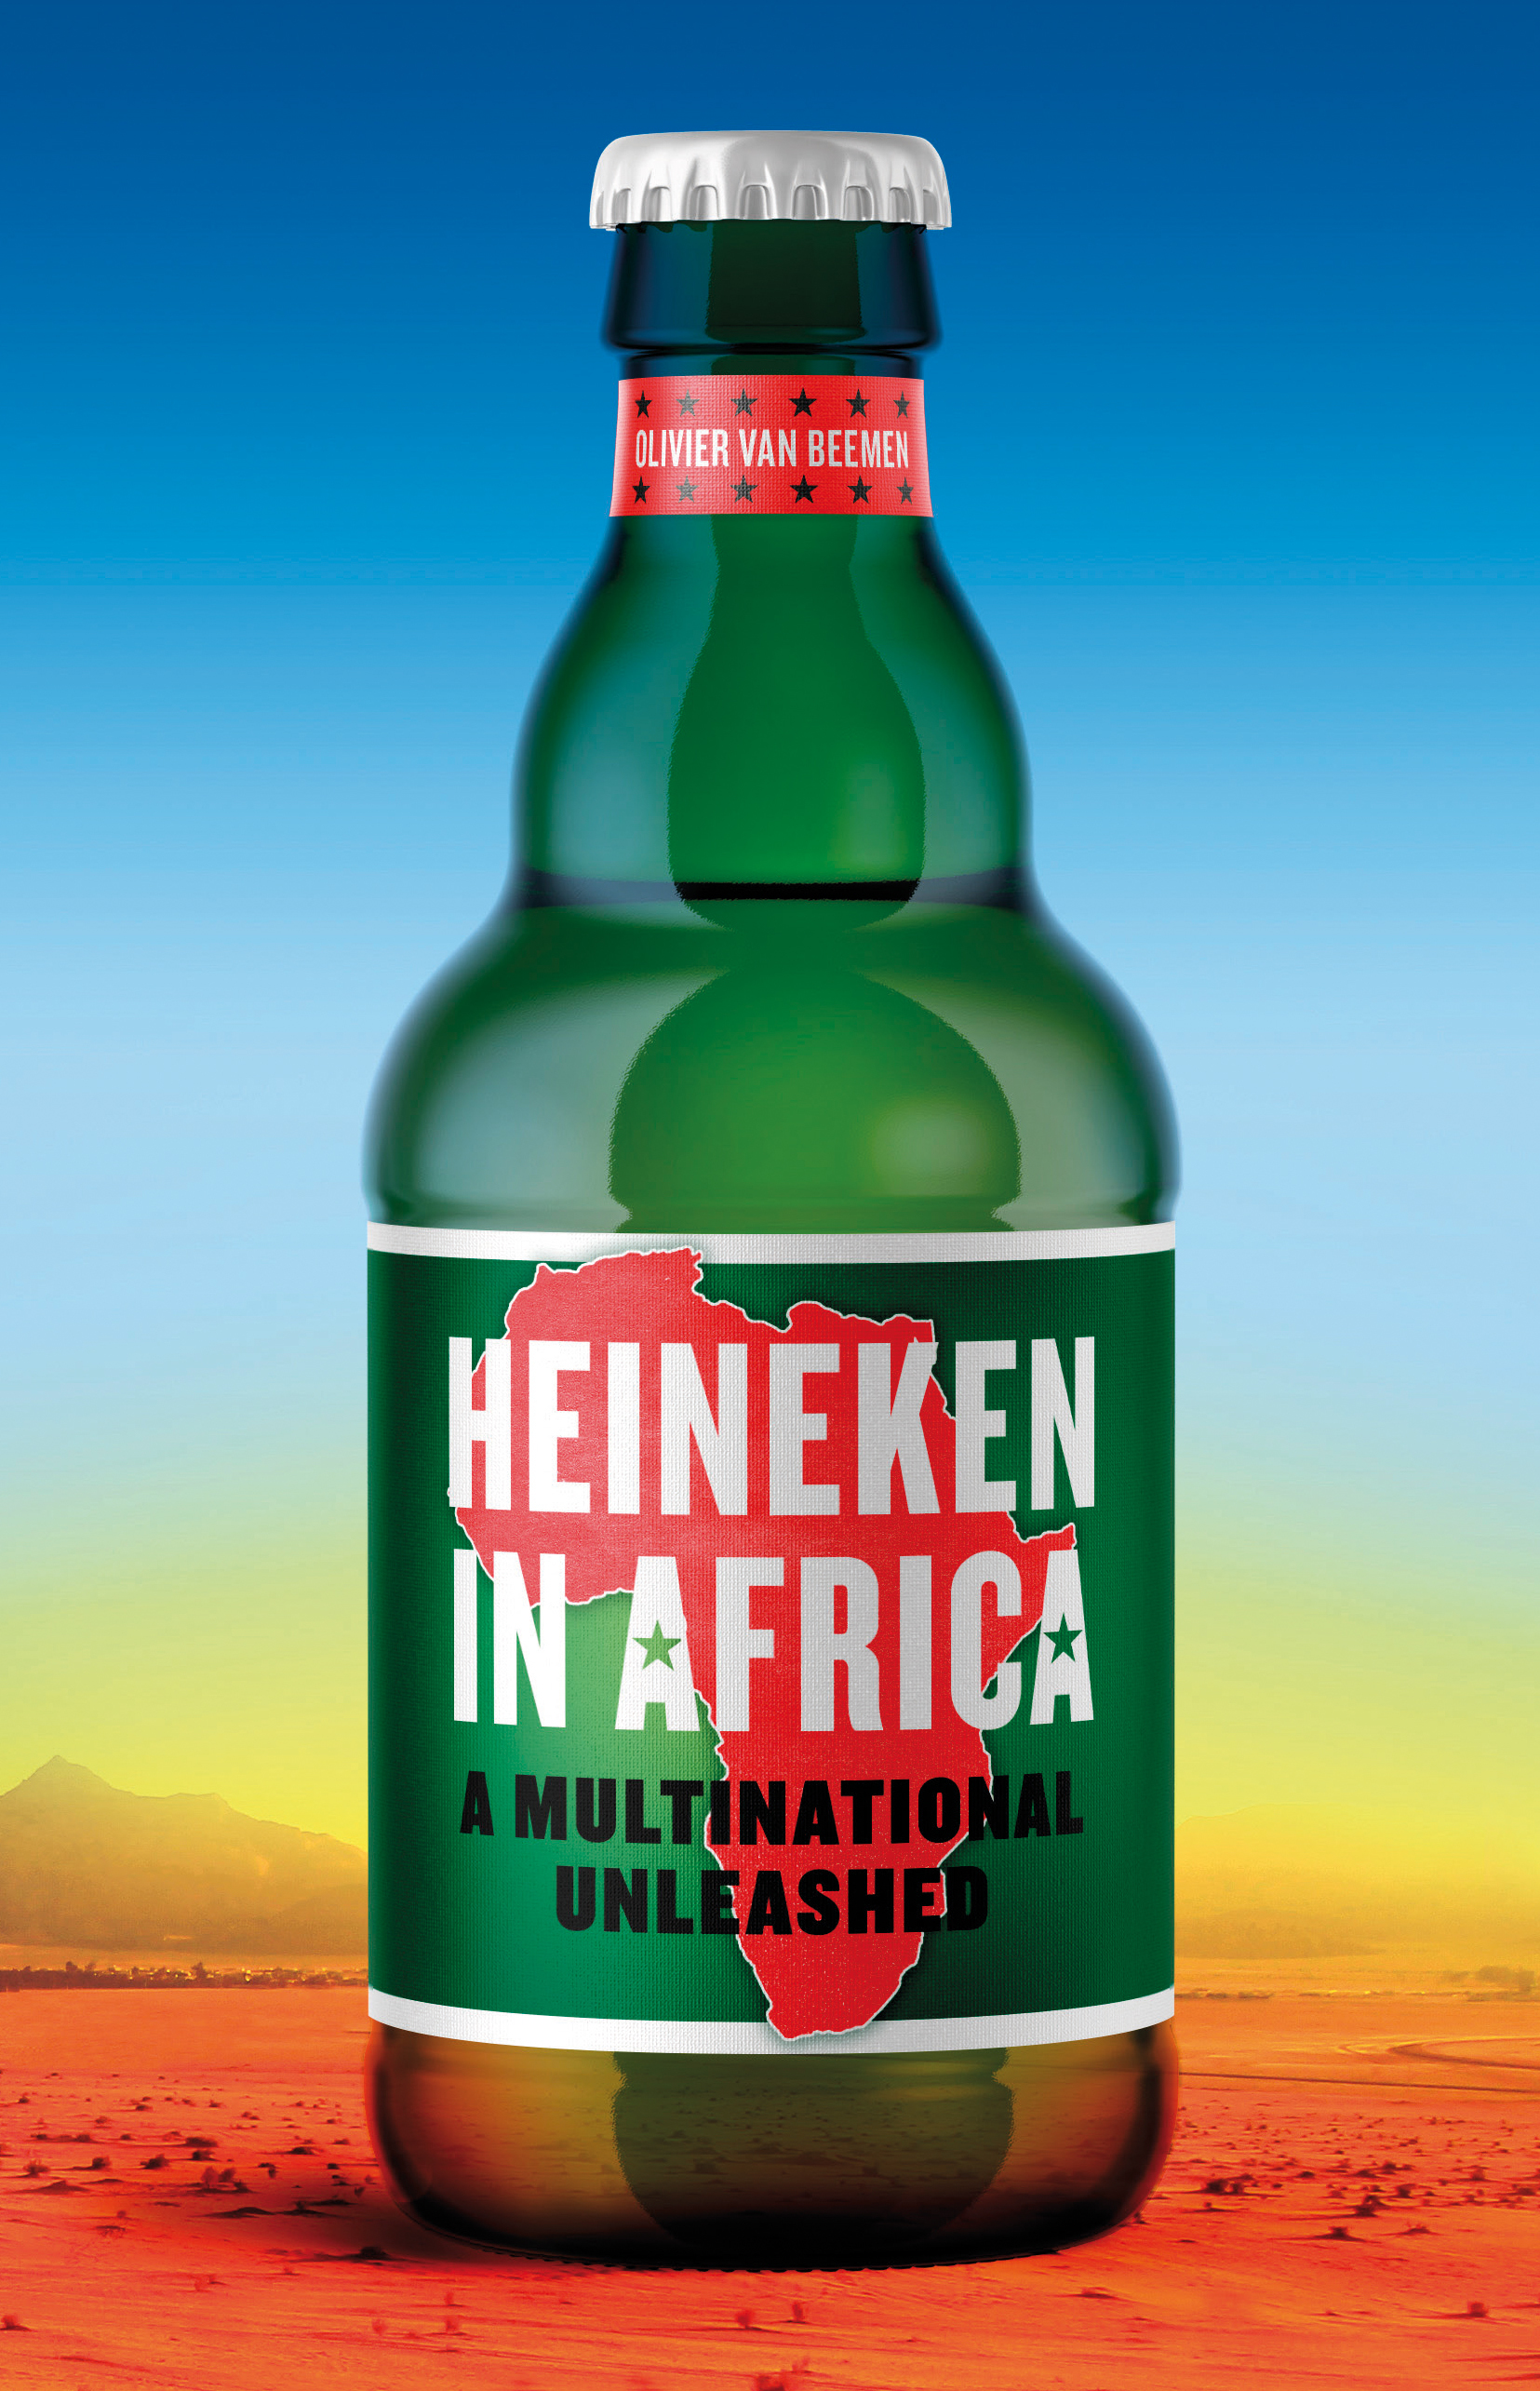 Heineken-in-Africa-Hurst-RBG